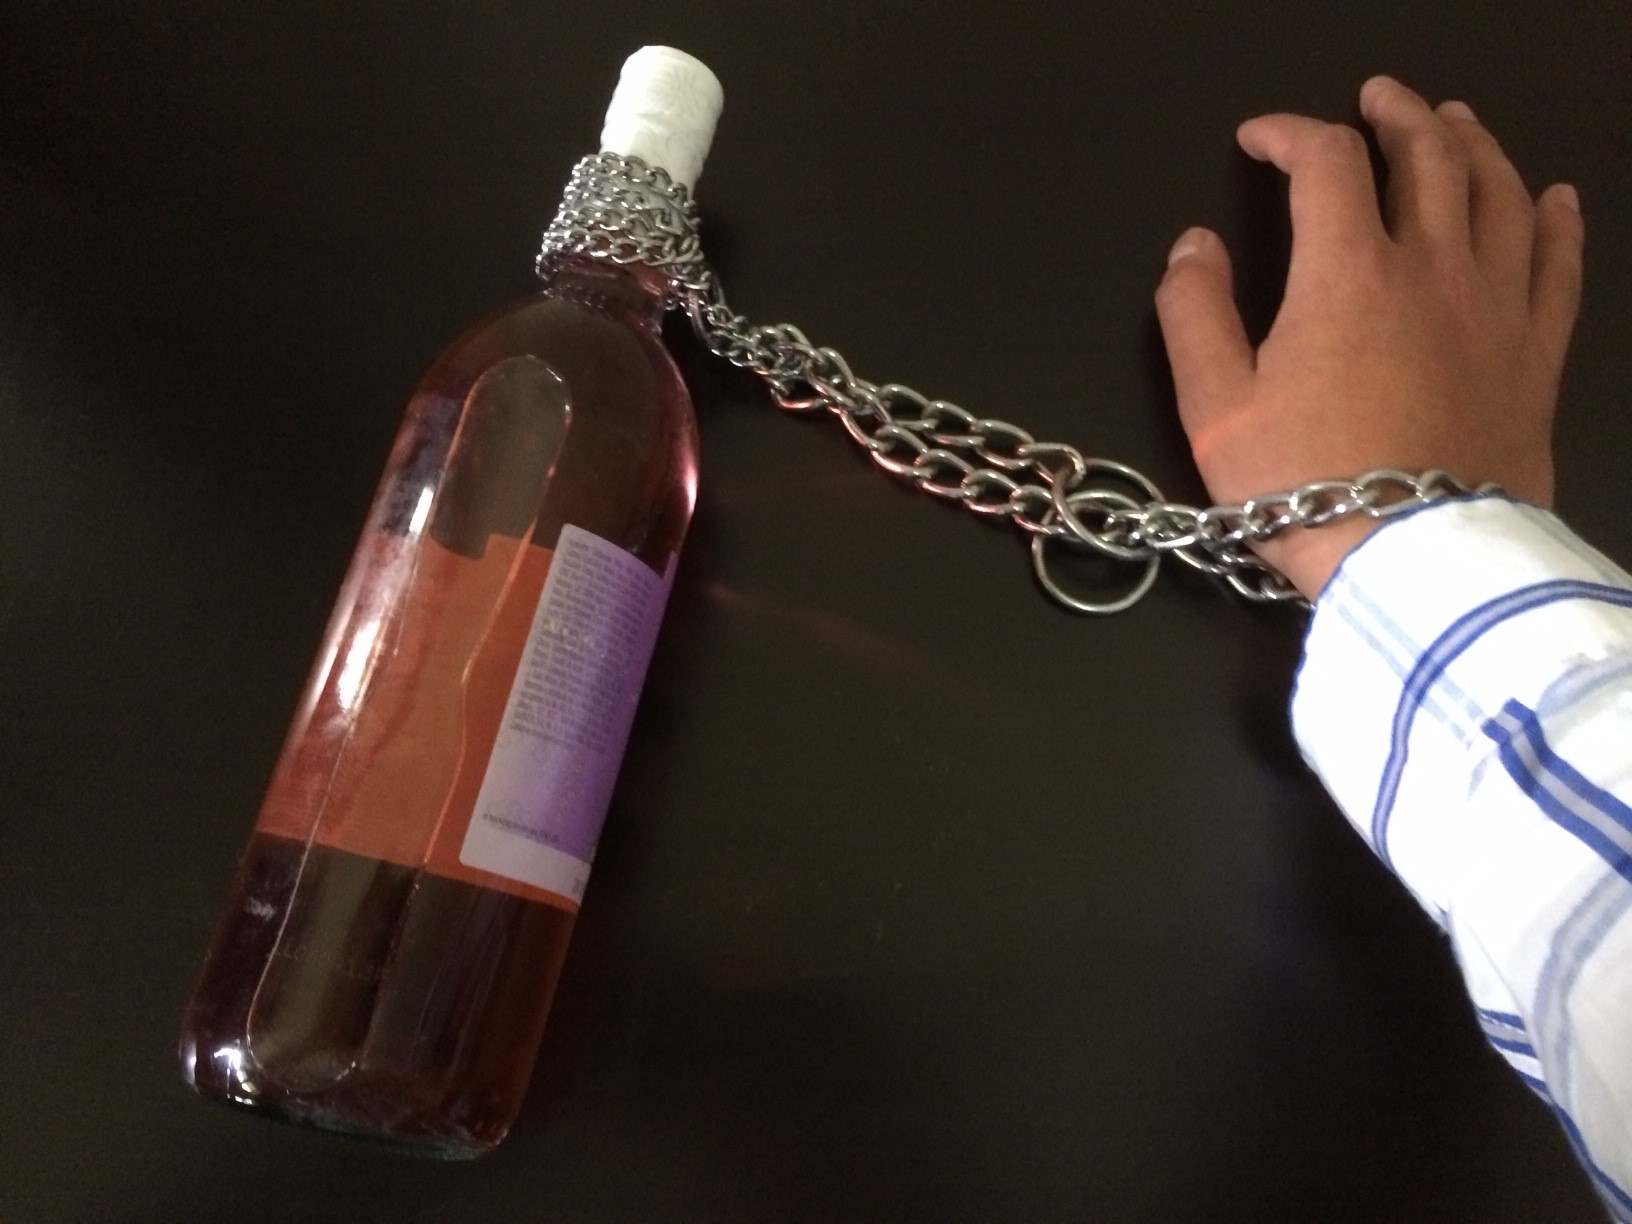 Alcol, bottiglia di vino vuota legata con una catena al polso di una persona